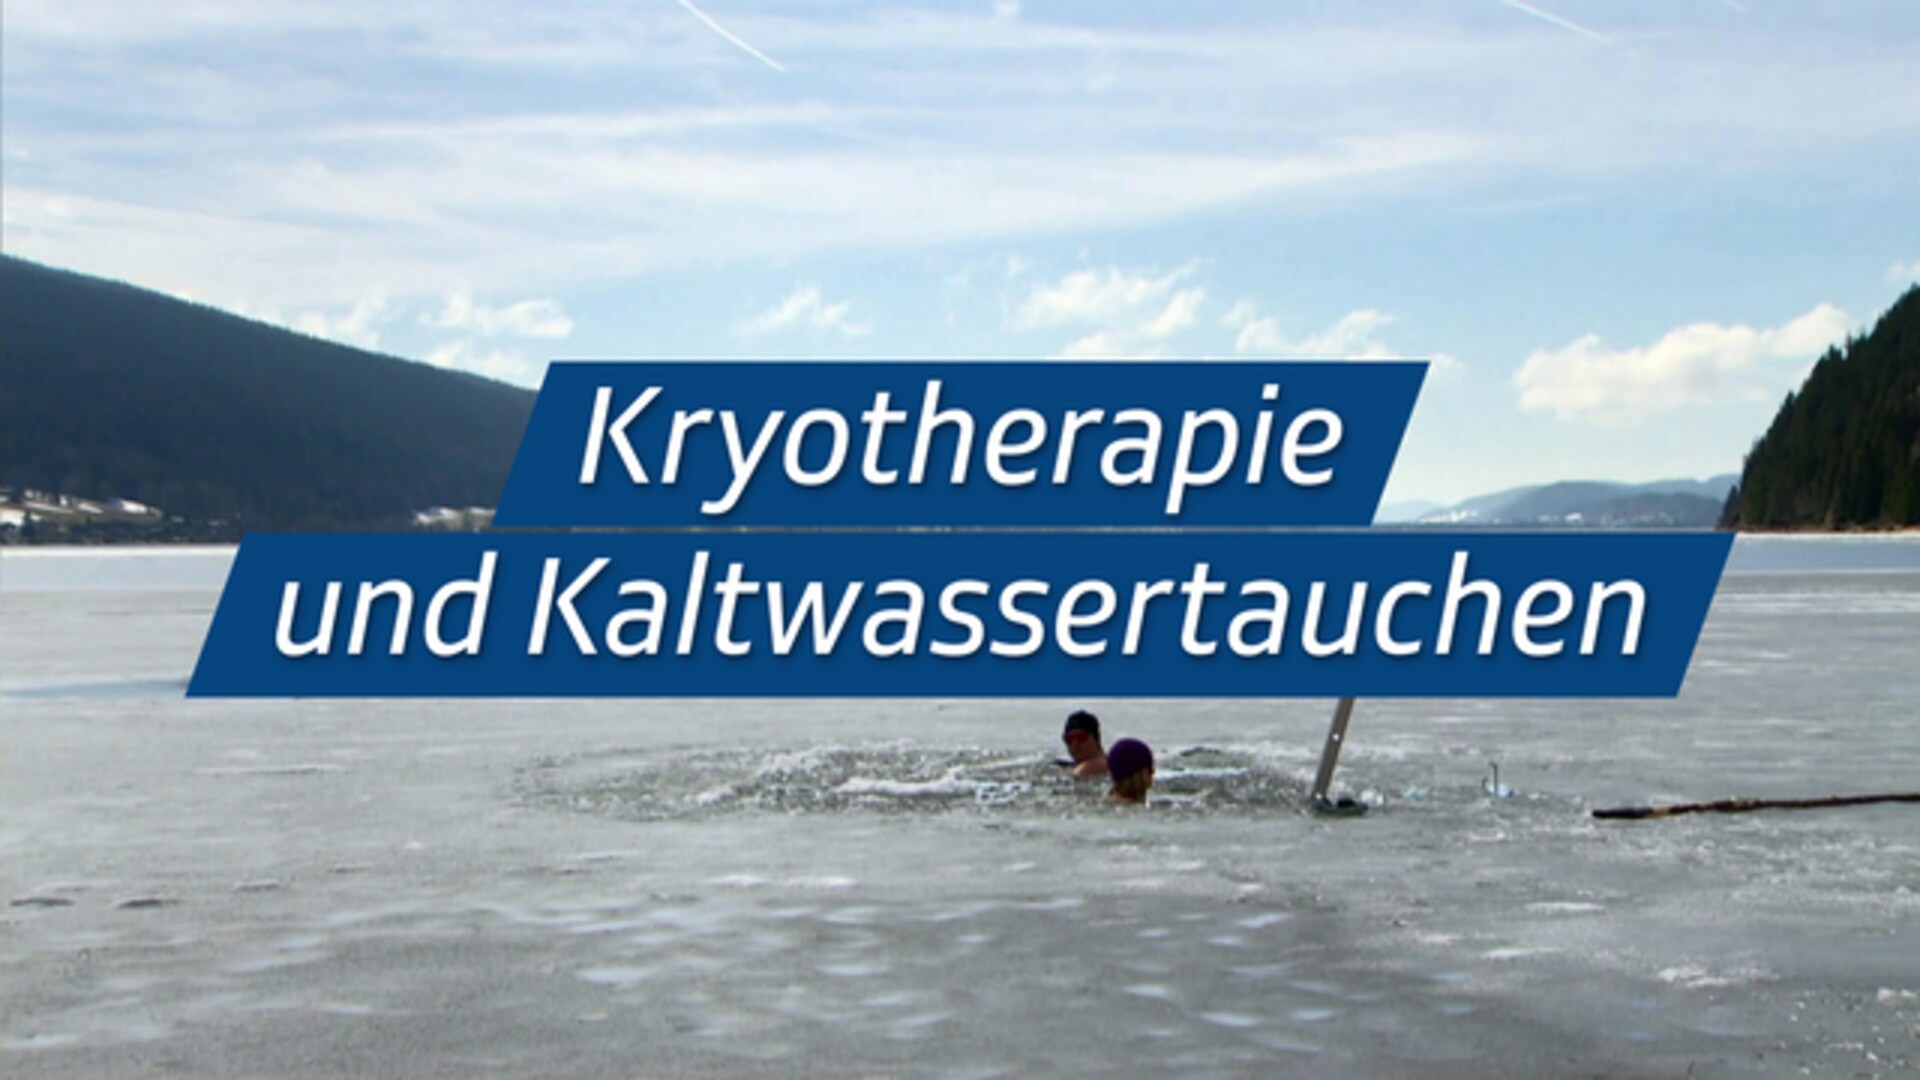 Kryotherapie und Kaltwassertauchen